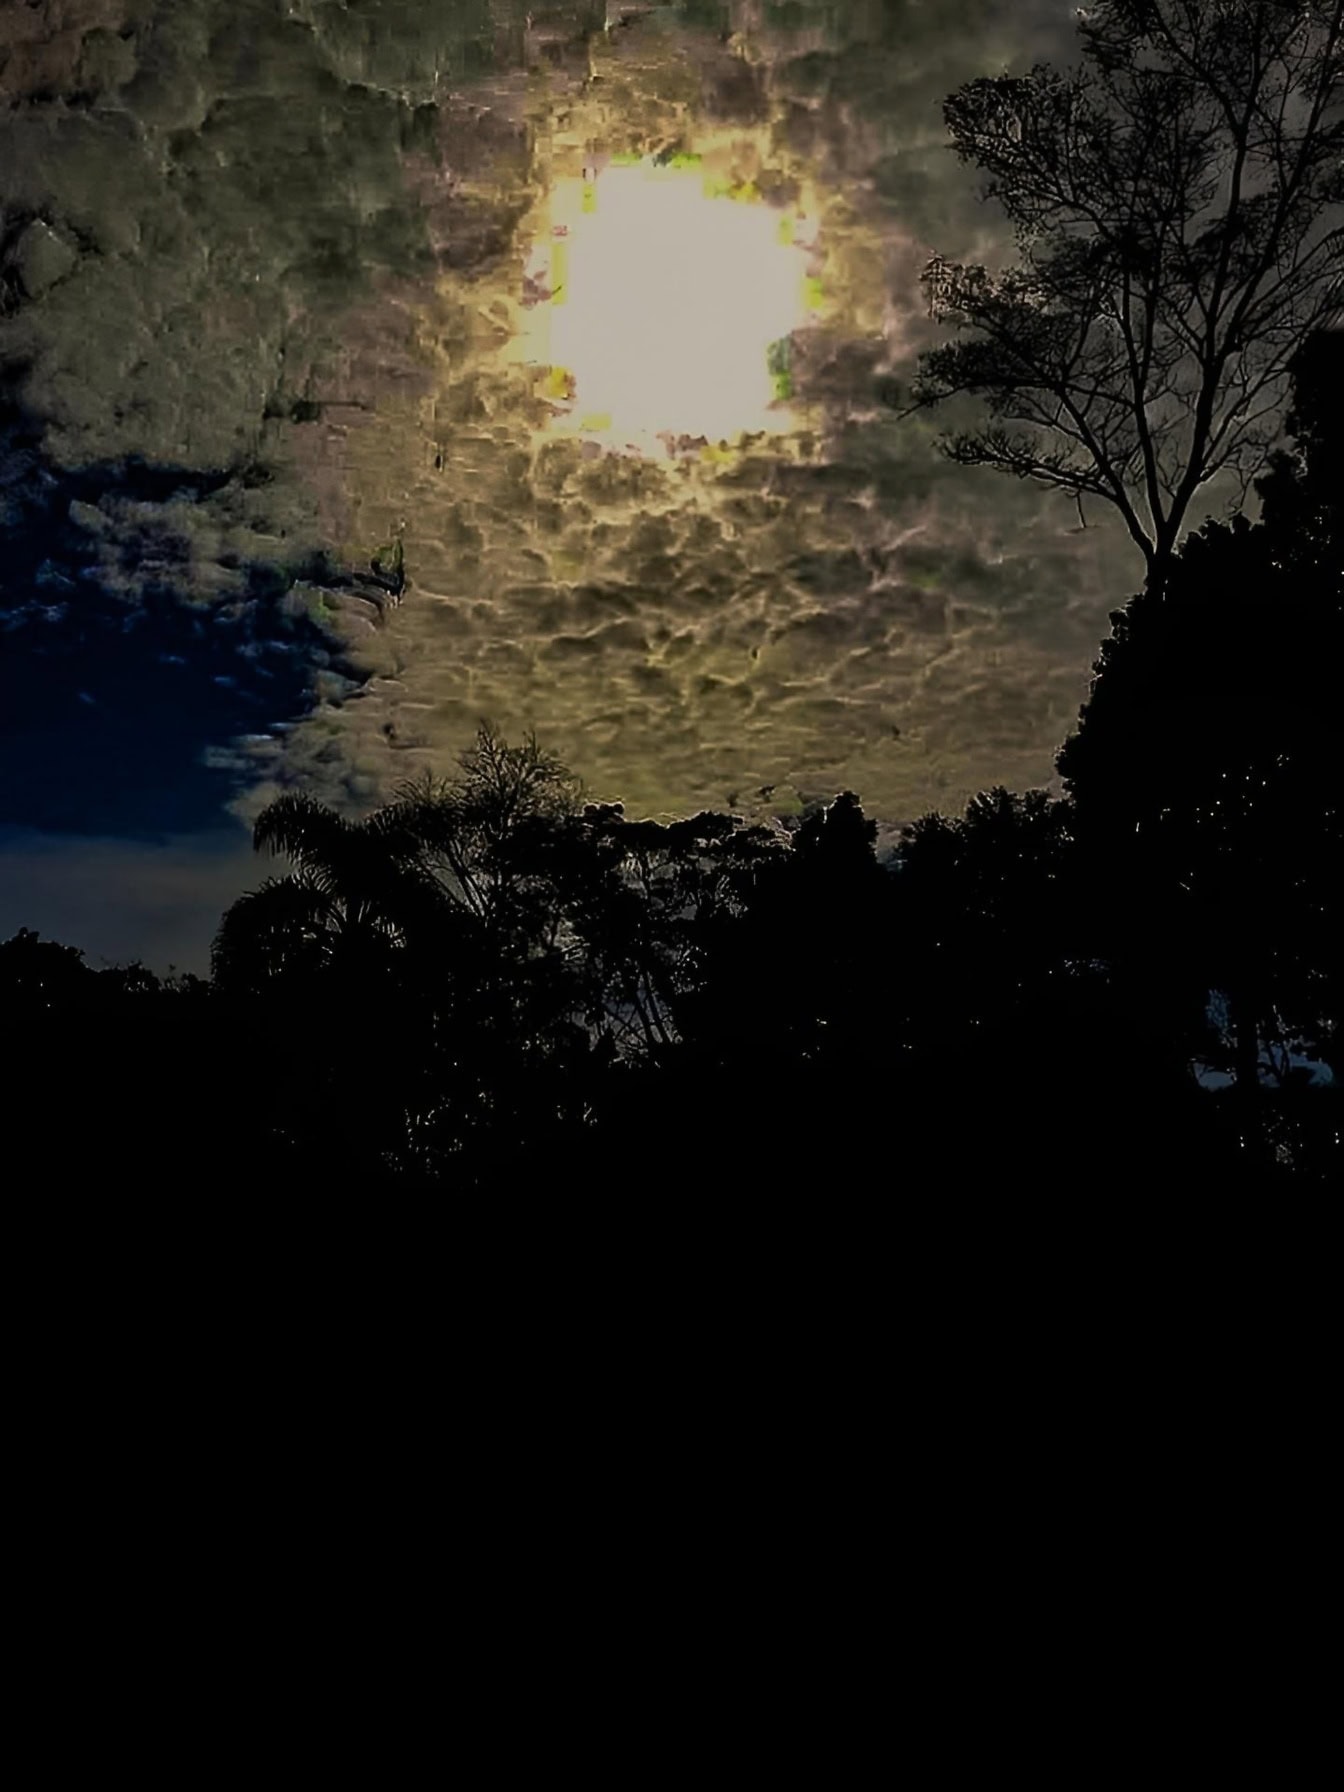 구름 사이 하늘에 달이 있는 한밤중의 달빛 풍경